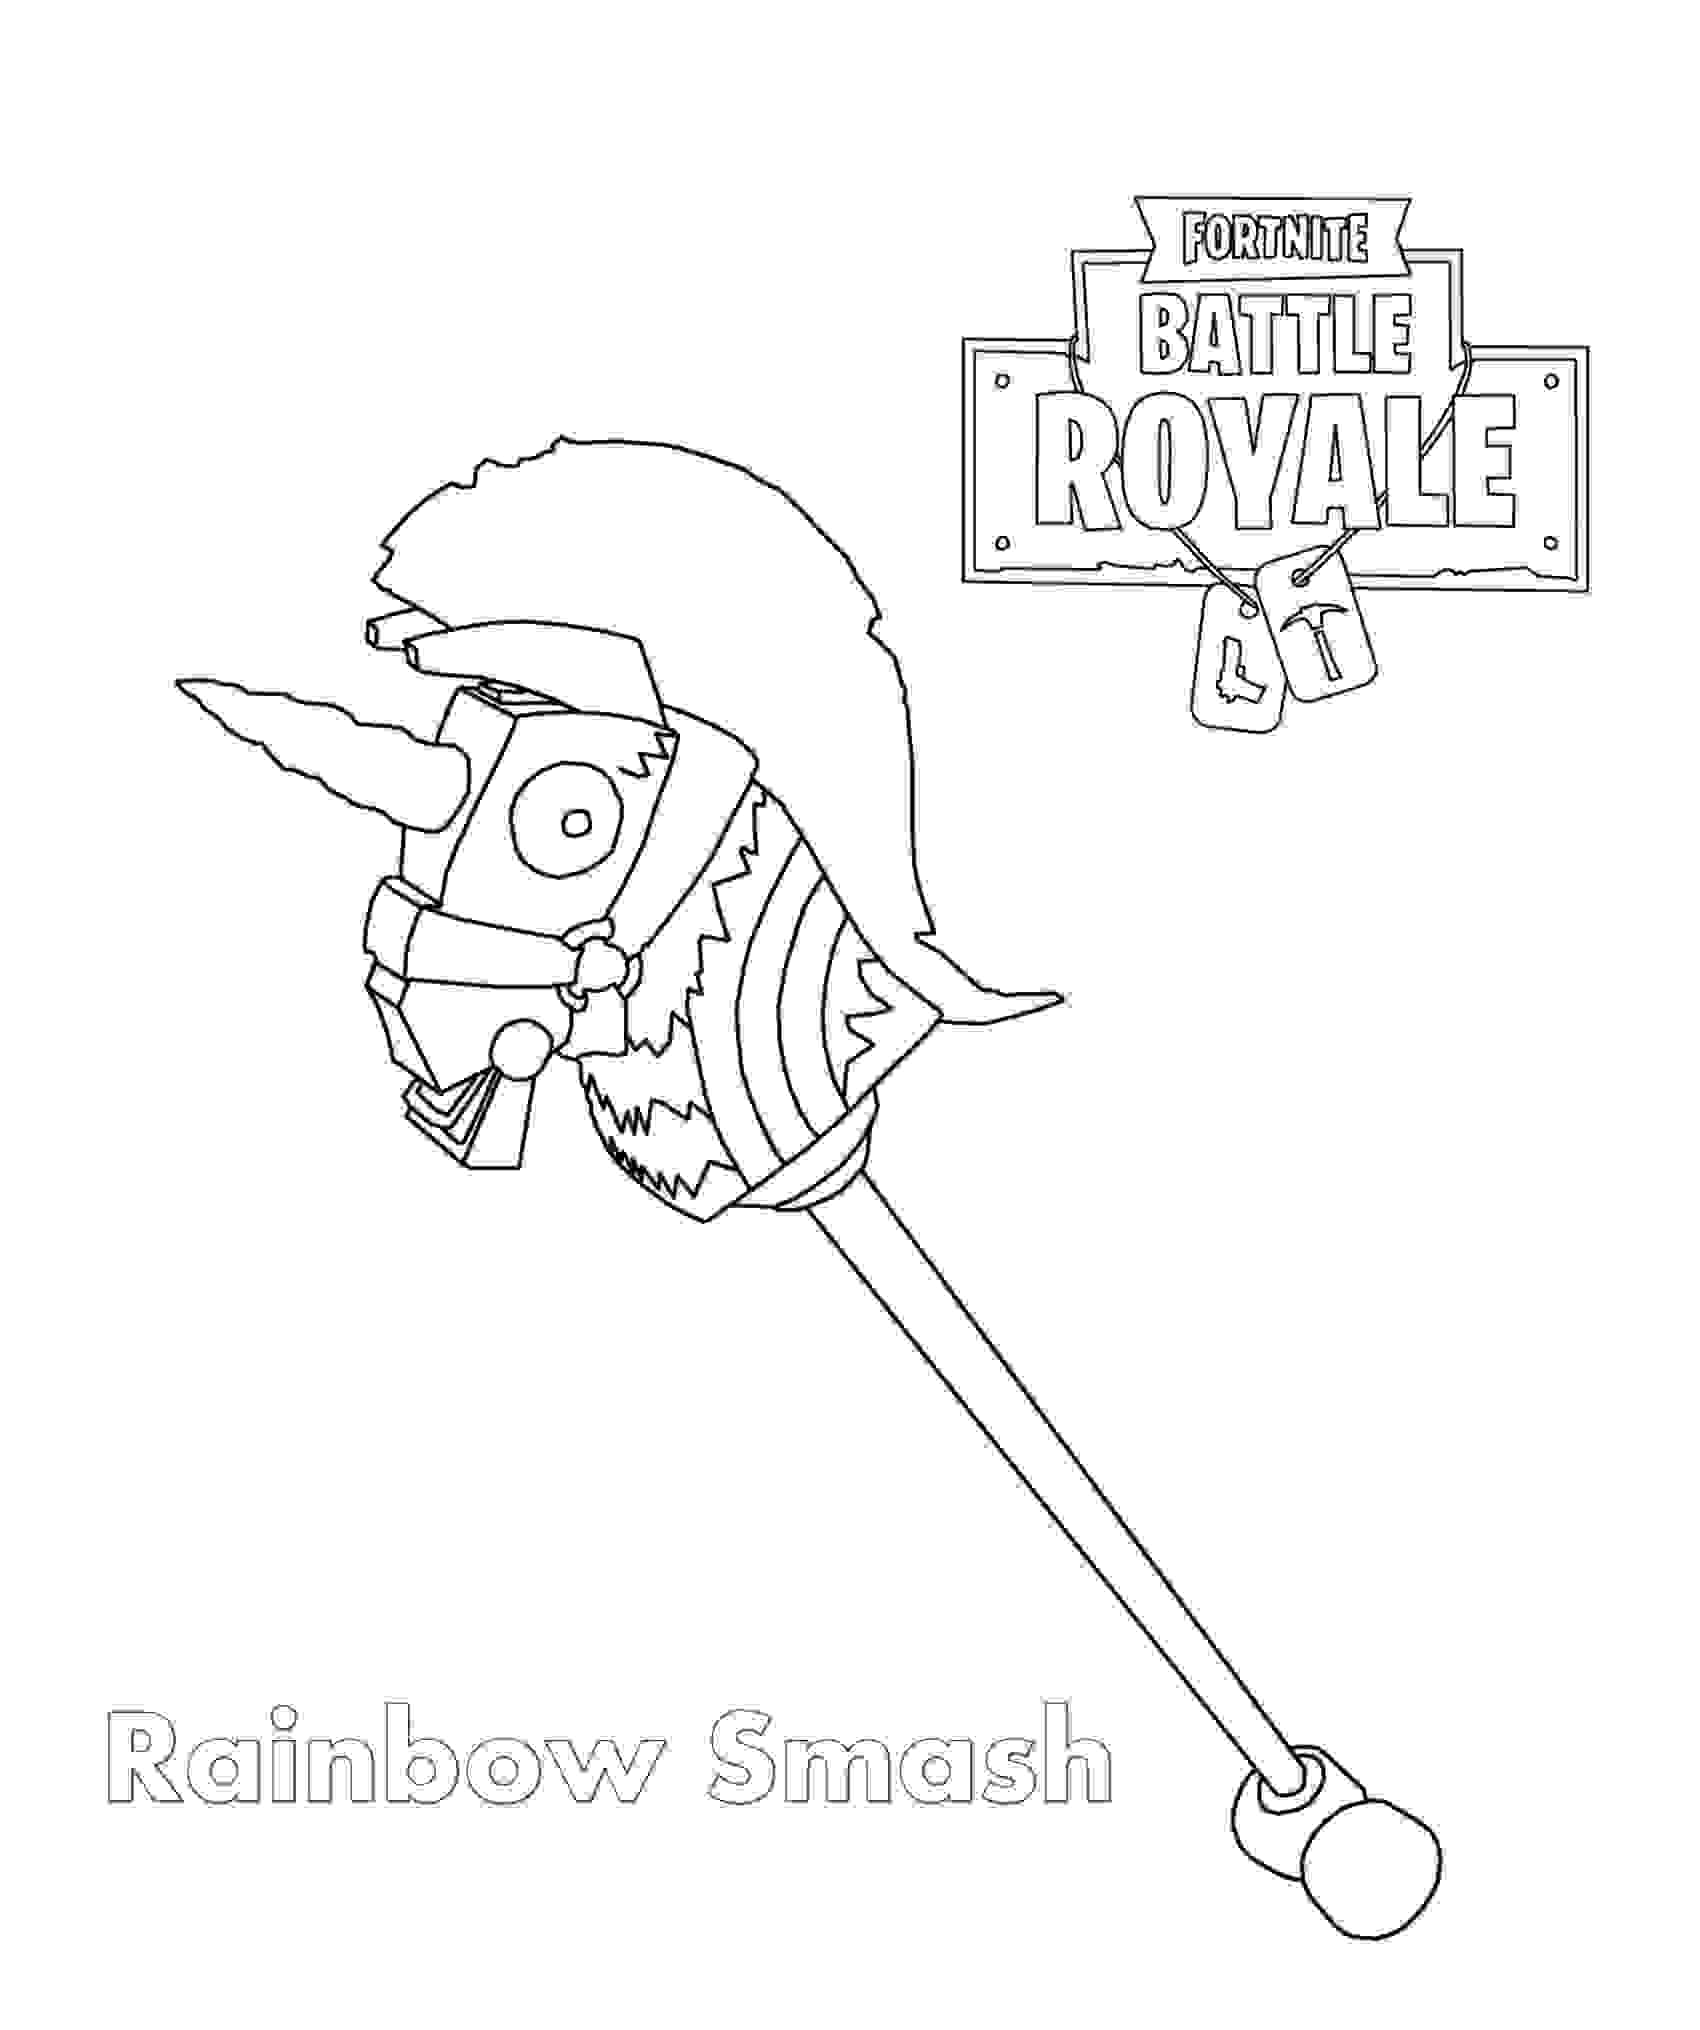 Rainbow Smash Pickaxe é uma ferramenta de colheita épica em Fortnite Battle Royale de Fortnite